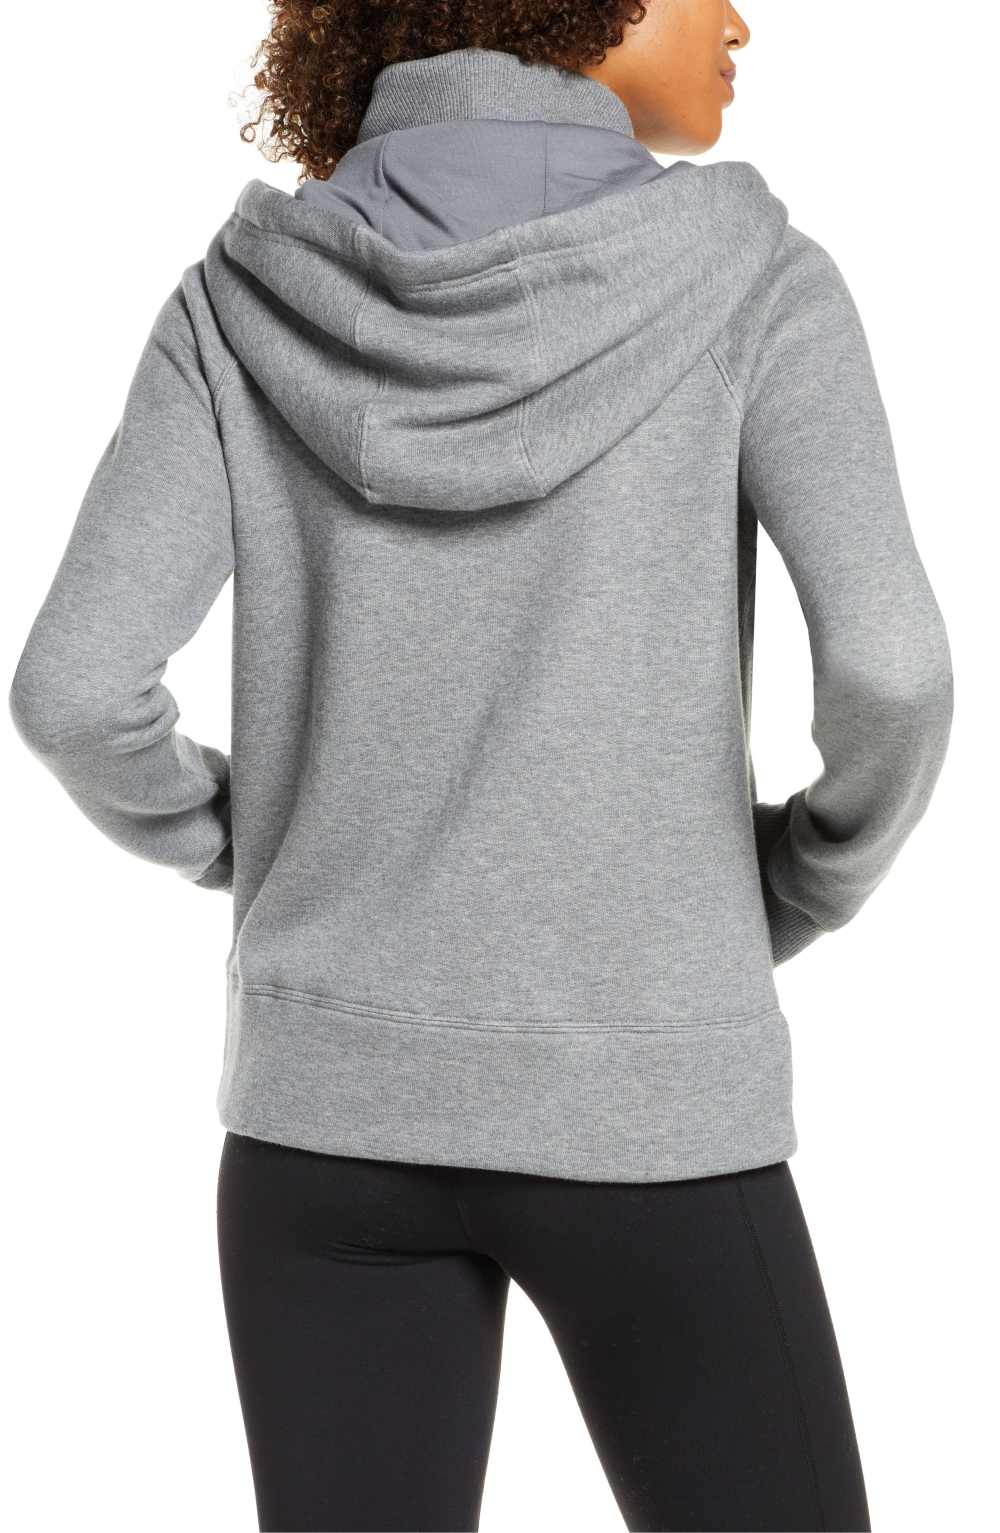 Zella Nola Full Zip Hooded Sweatshirt (Dark Grey Heather)